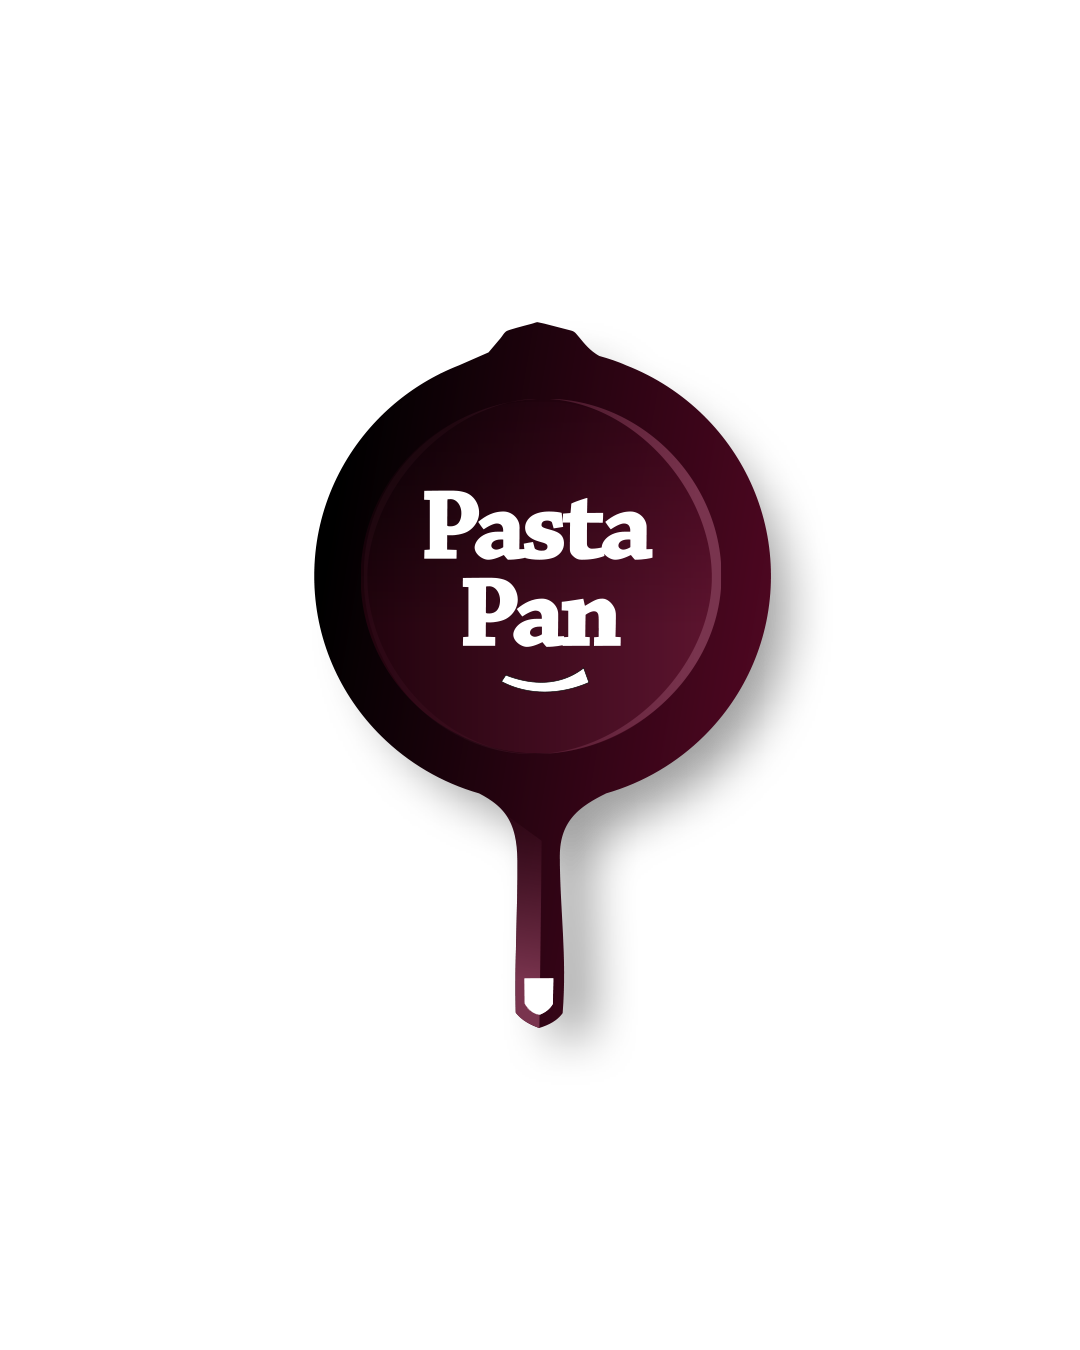 logo-pasta-pan-full-pn